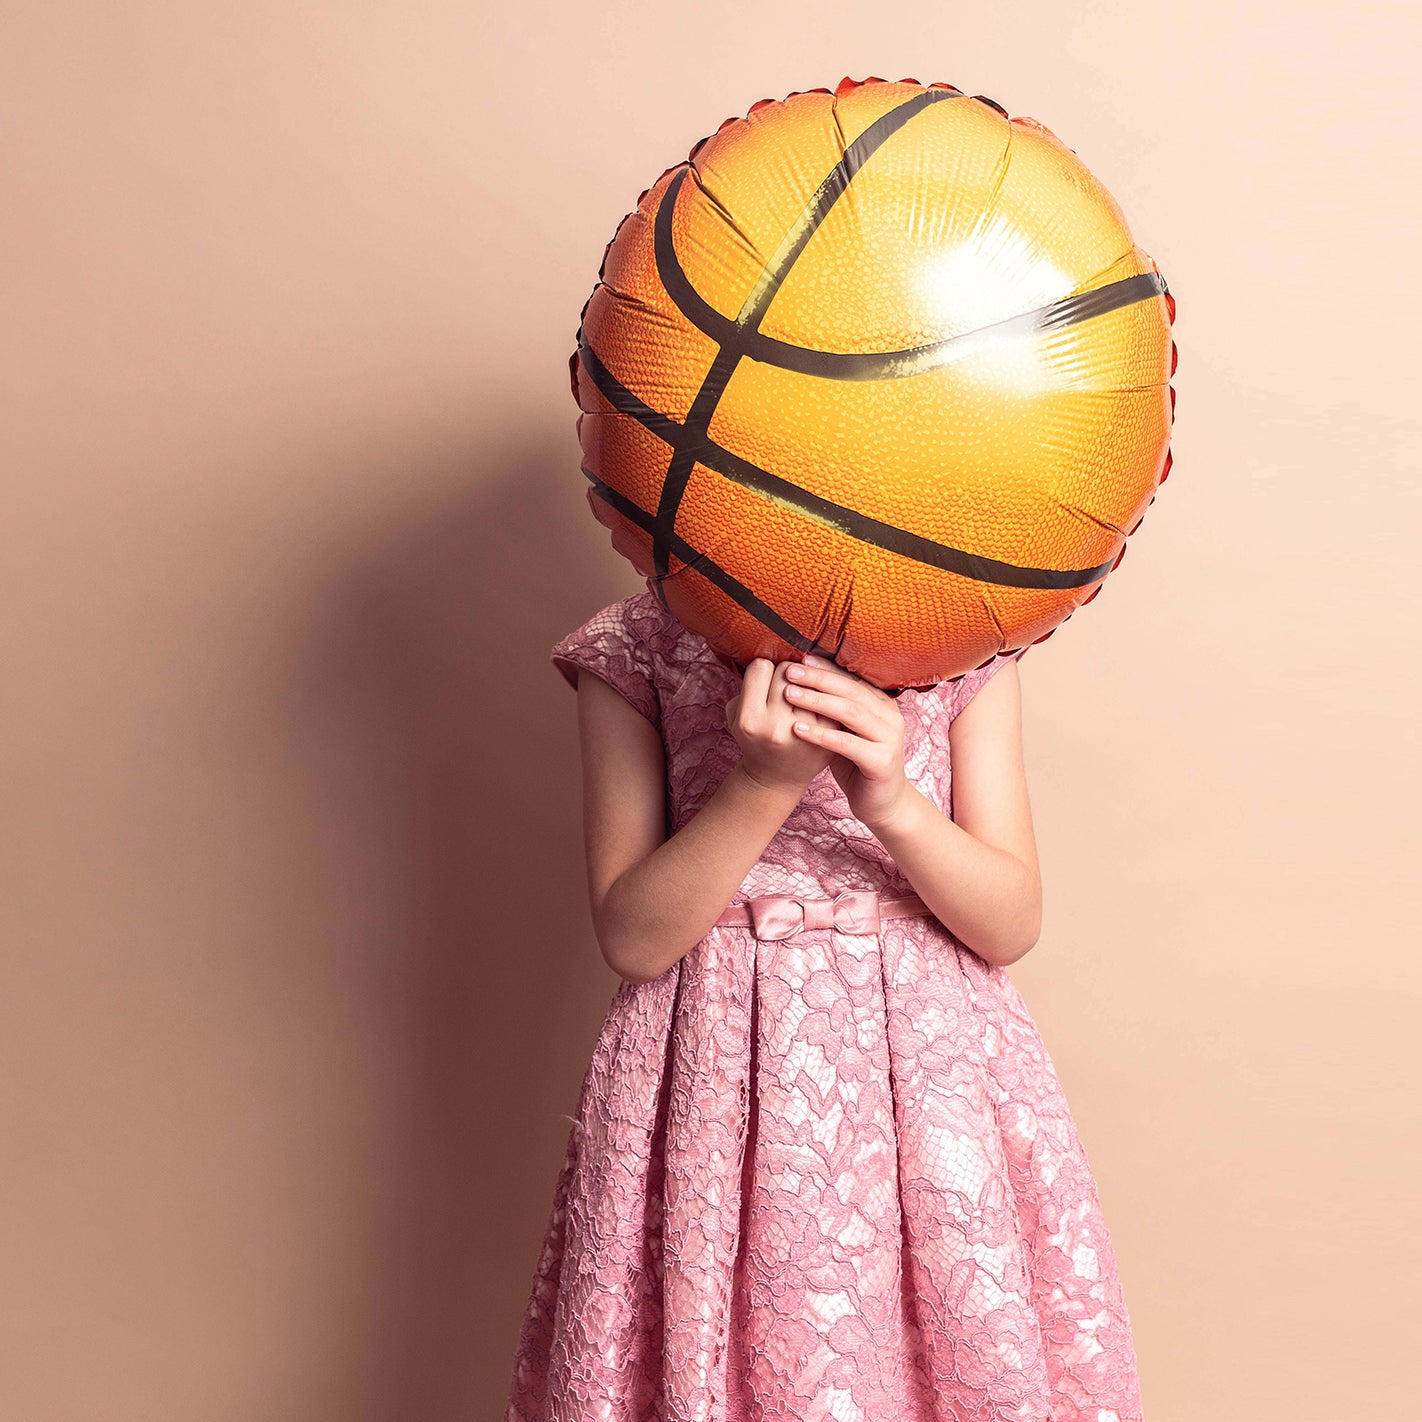 Basketball Balloon